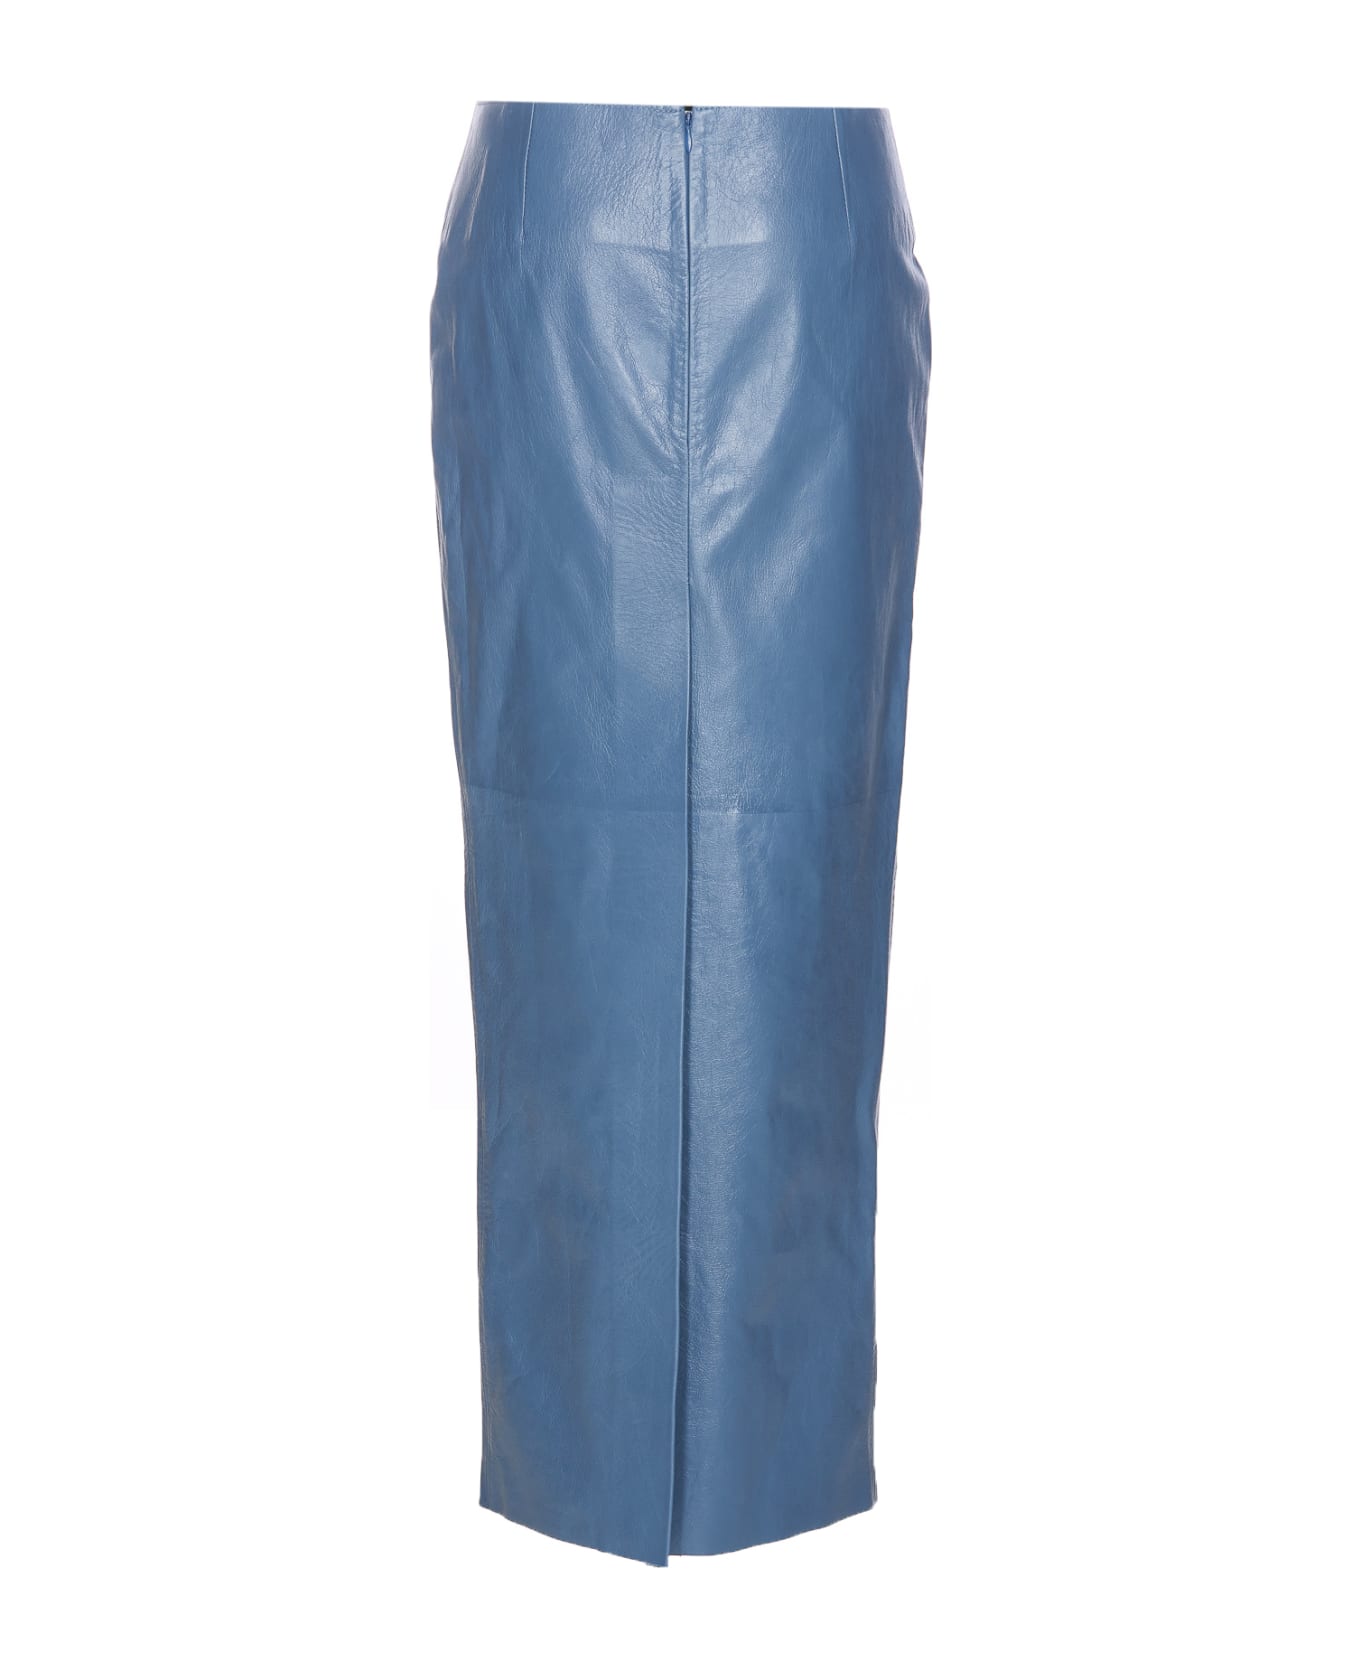 Marni Leather Skirt - 00B37